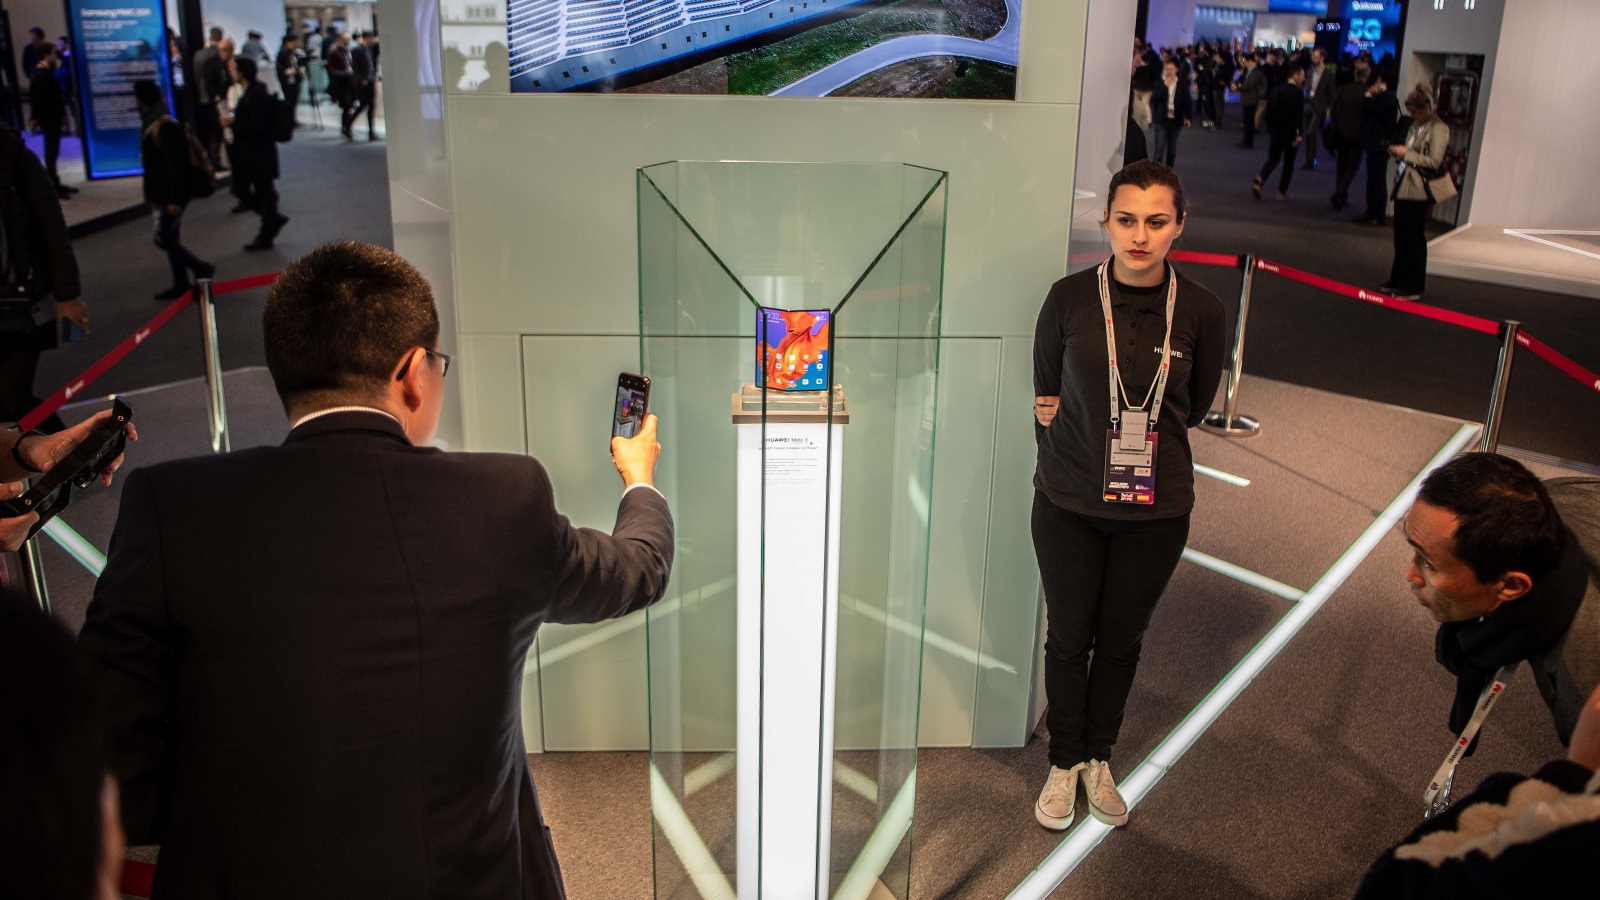 ‪‬ هاتف هواوي ميت أكس عرض في مؤتمر الهواتف الجوالة العالمي خلال السنة الماضية بجوار الحجرة المخصصة لعلامة سامسونغ(غيتي)